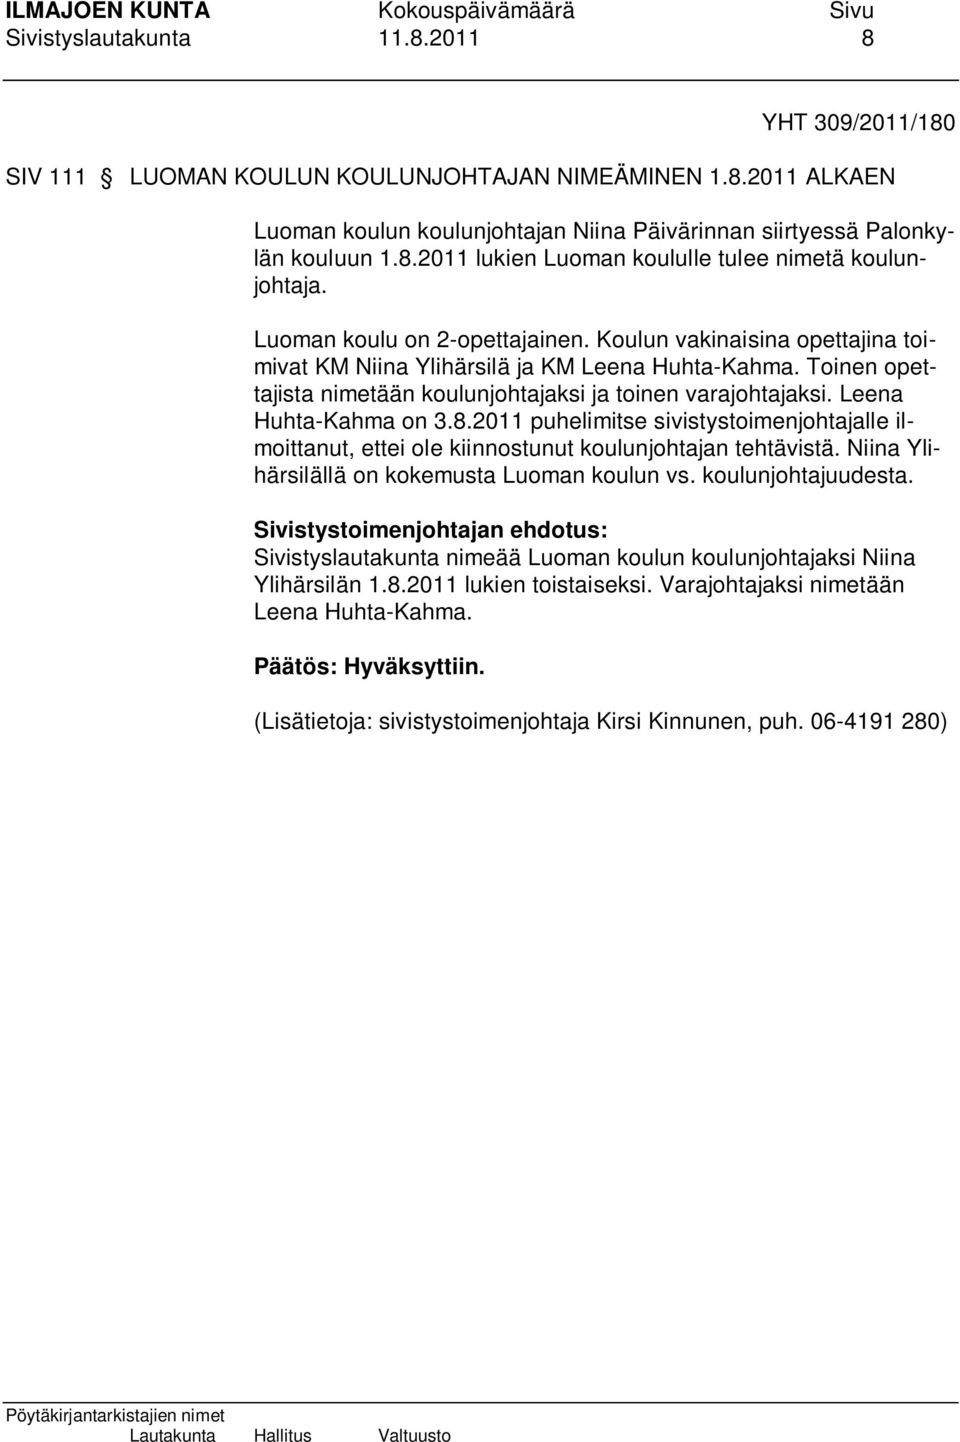 Leena Huhta-Kahma on 3.8.2011 puhelimitse sivistystoimenjohtajalle ilmoittanut, ettei ole kiinnostunut koulunjohtajan tehtävistä. Niina Ylihärsilällä on kokemusta Luoman koulun vs.